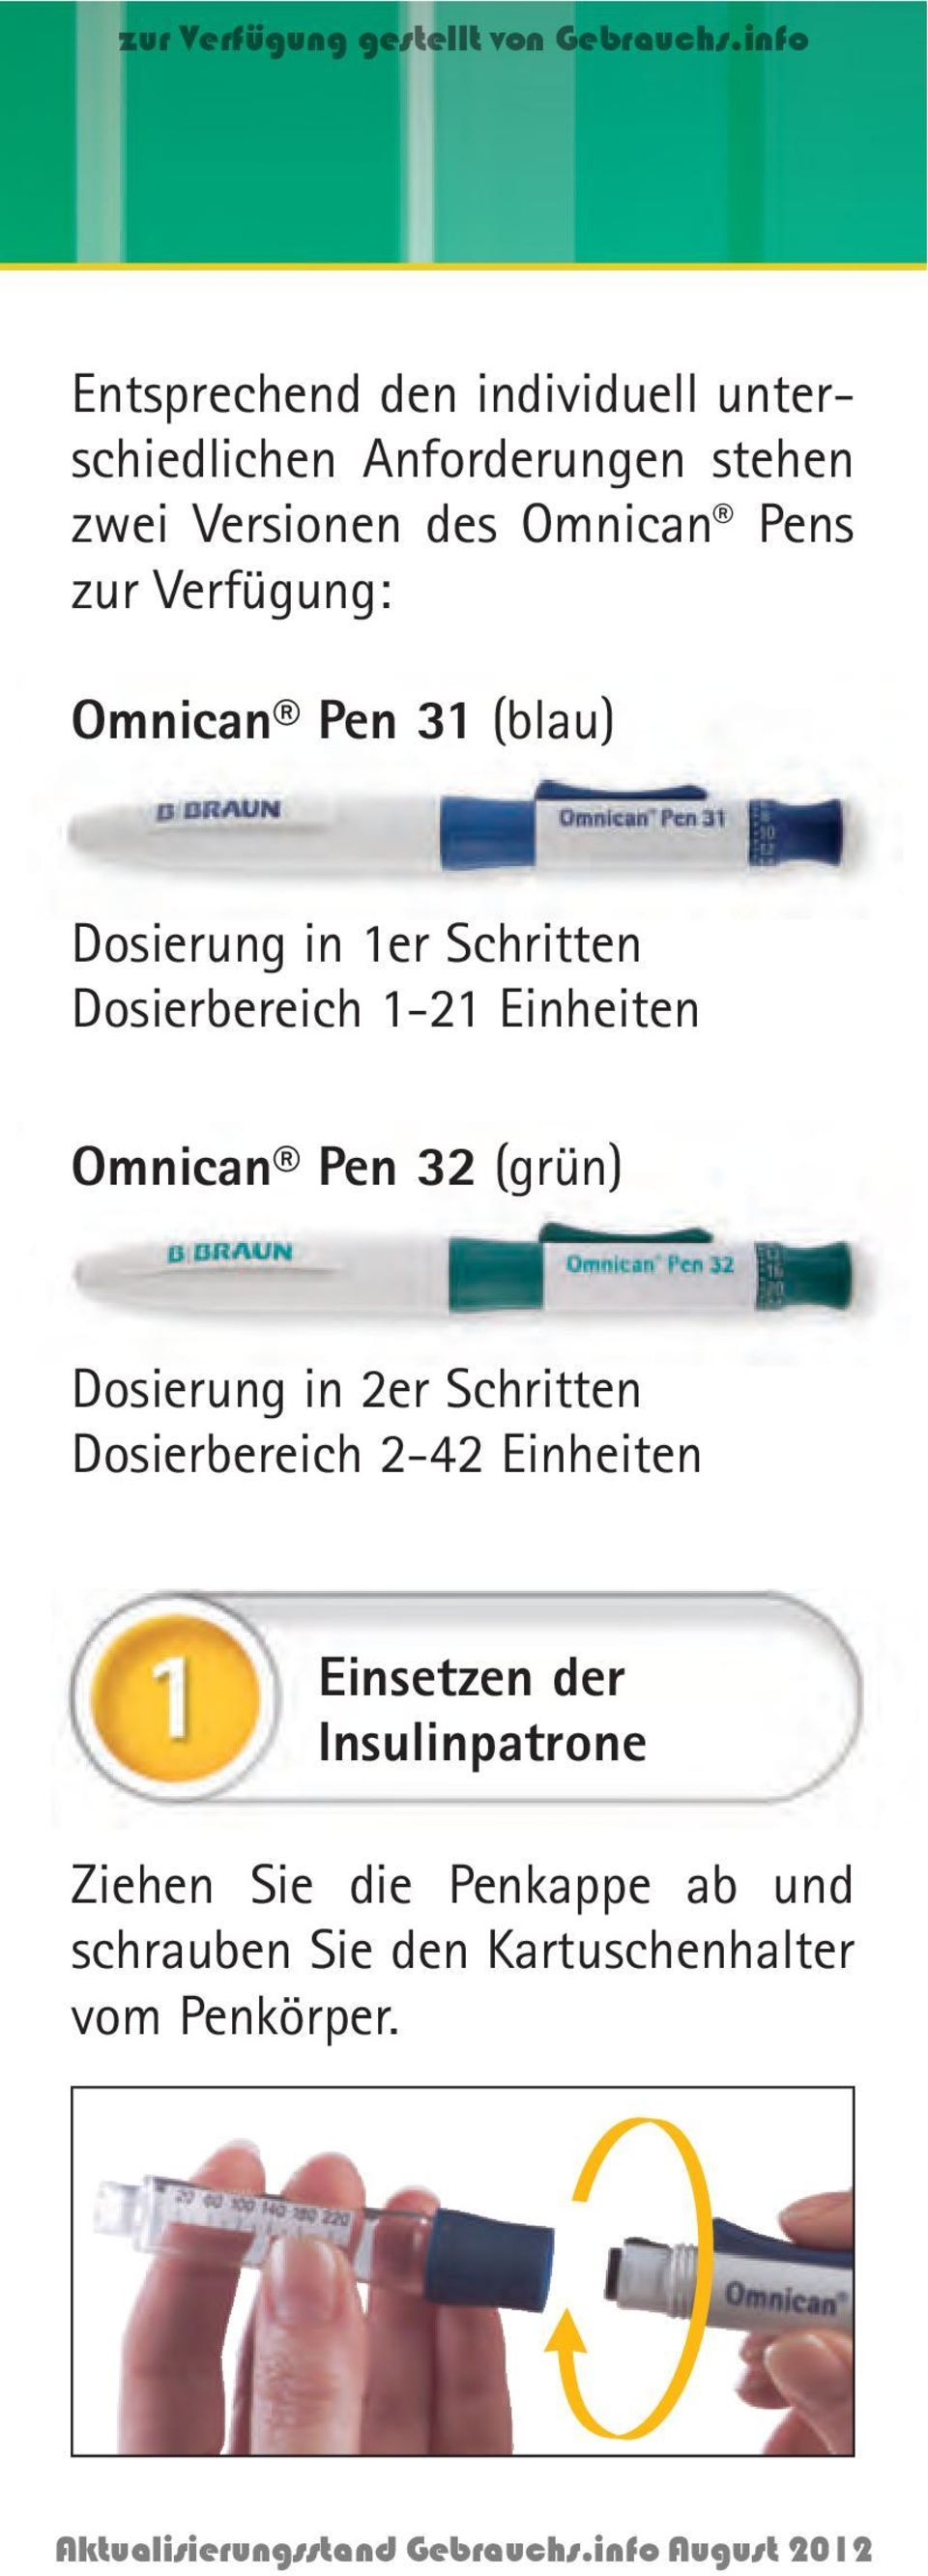 Einheiten Omnican Pen 32 (grün) Dosierung in 2er Schritten Dosierbereich 2-42 Einheiten